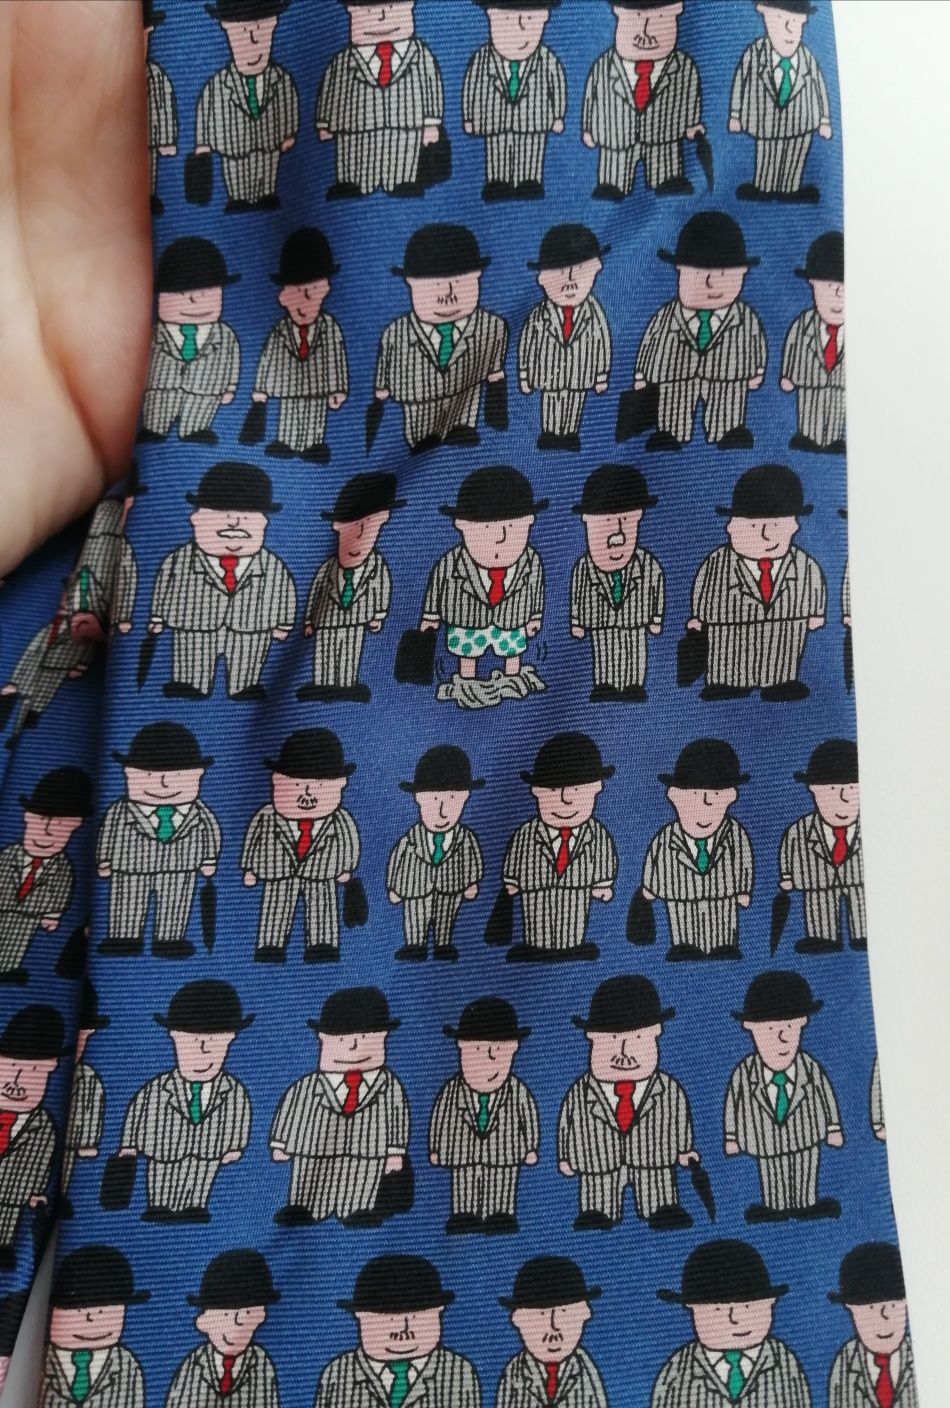 Галстук The Rack оригинальный шёлковый винтажный, краватка, бизнесмен